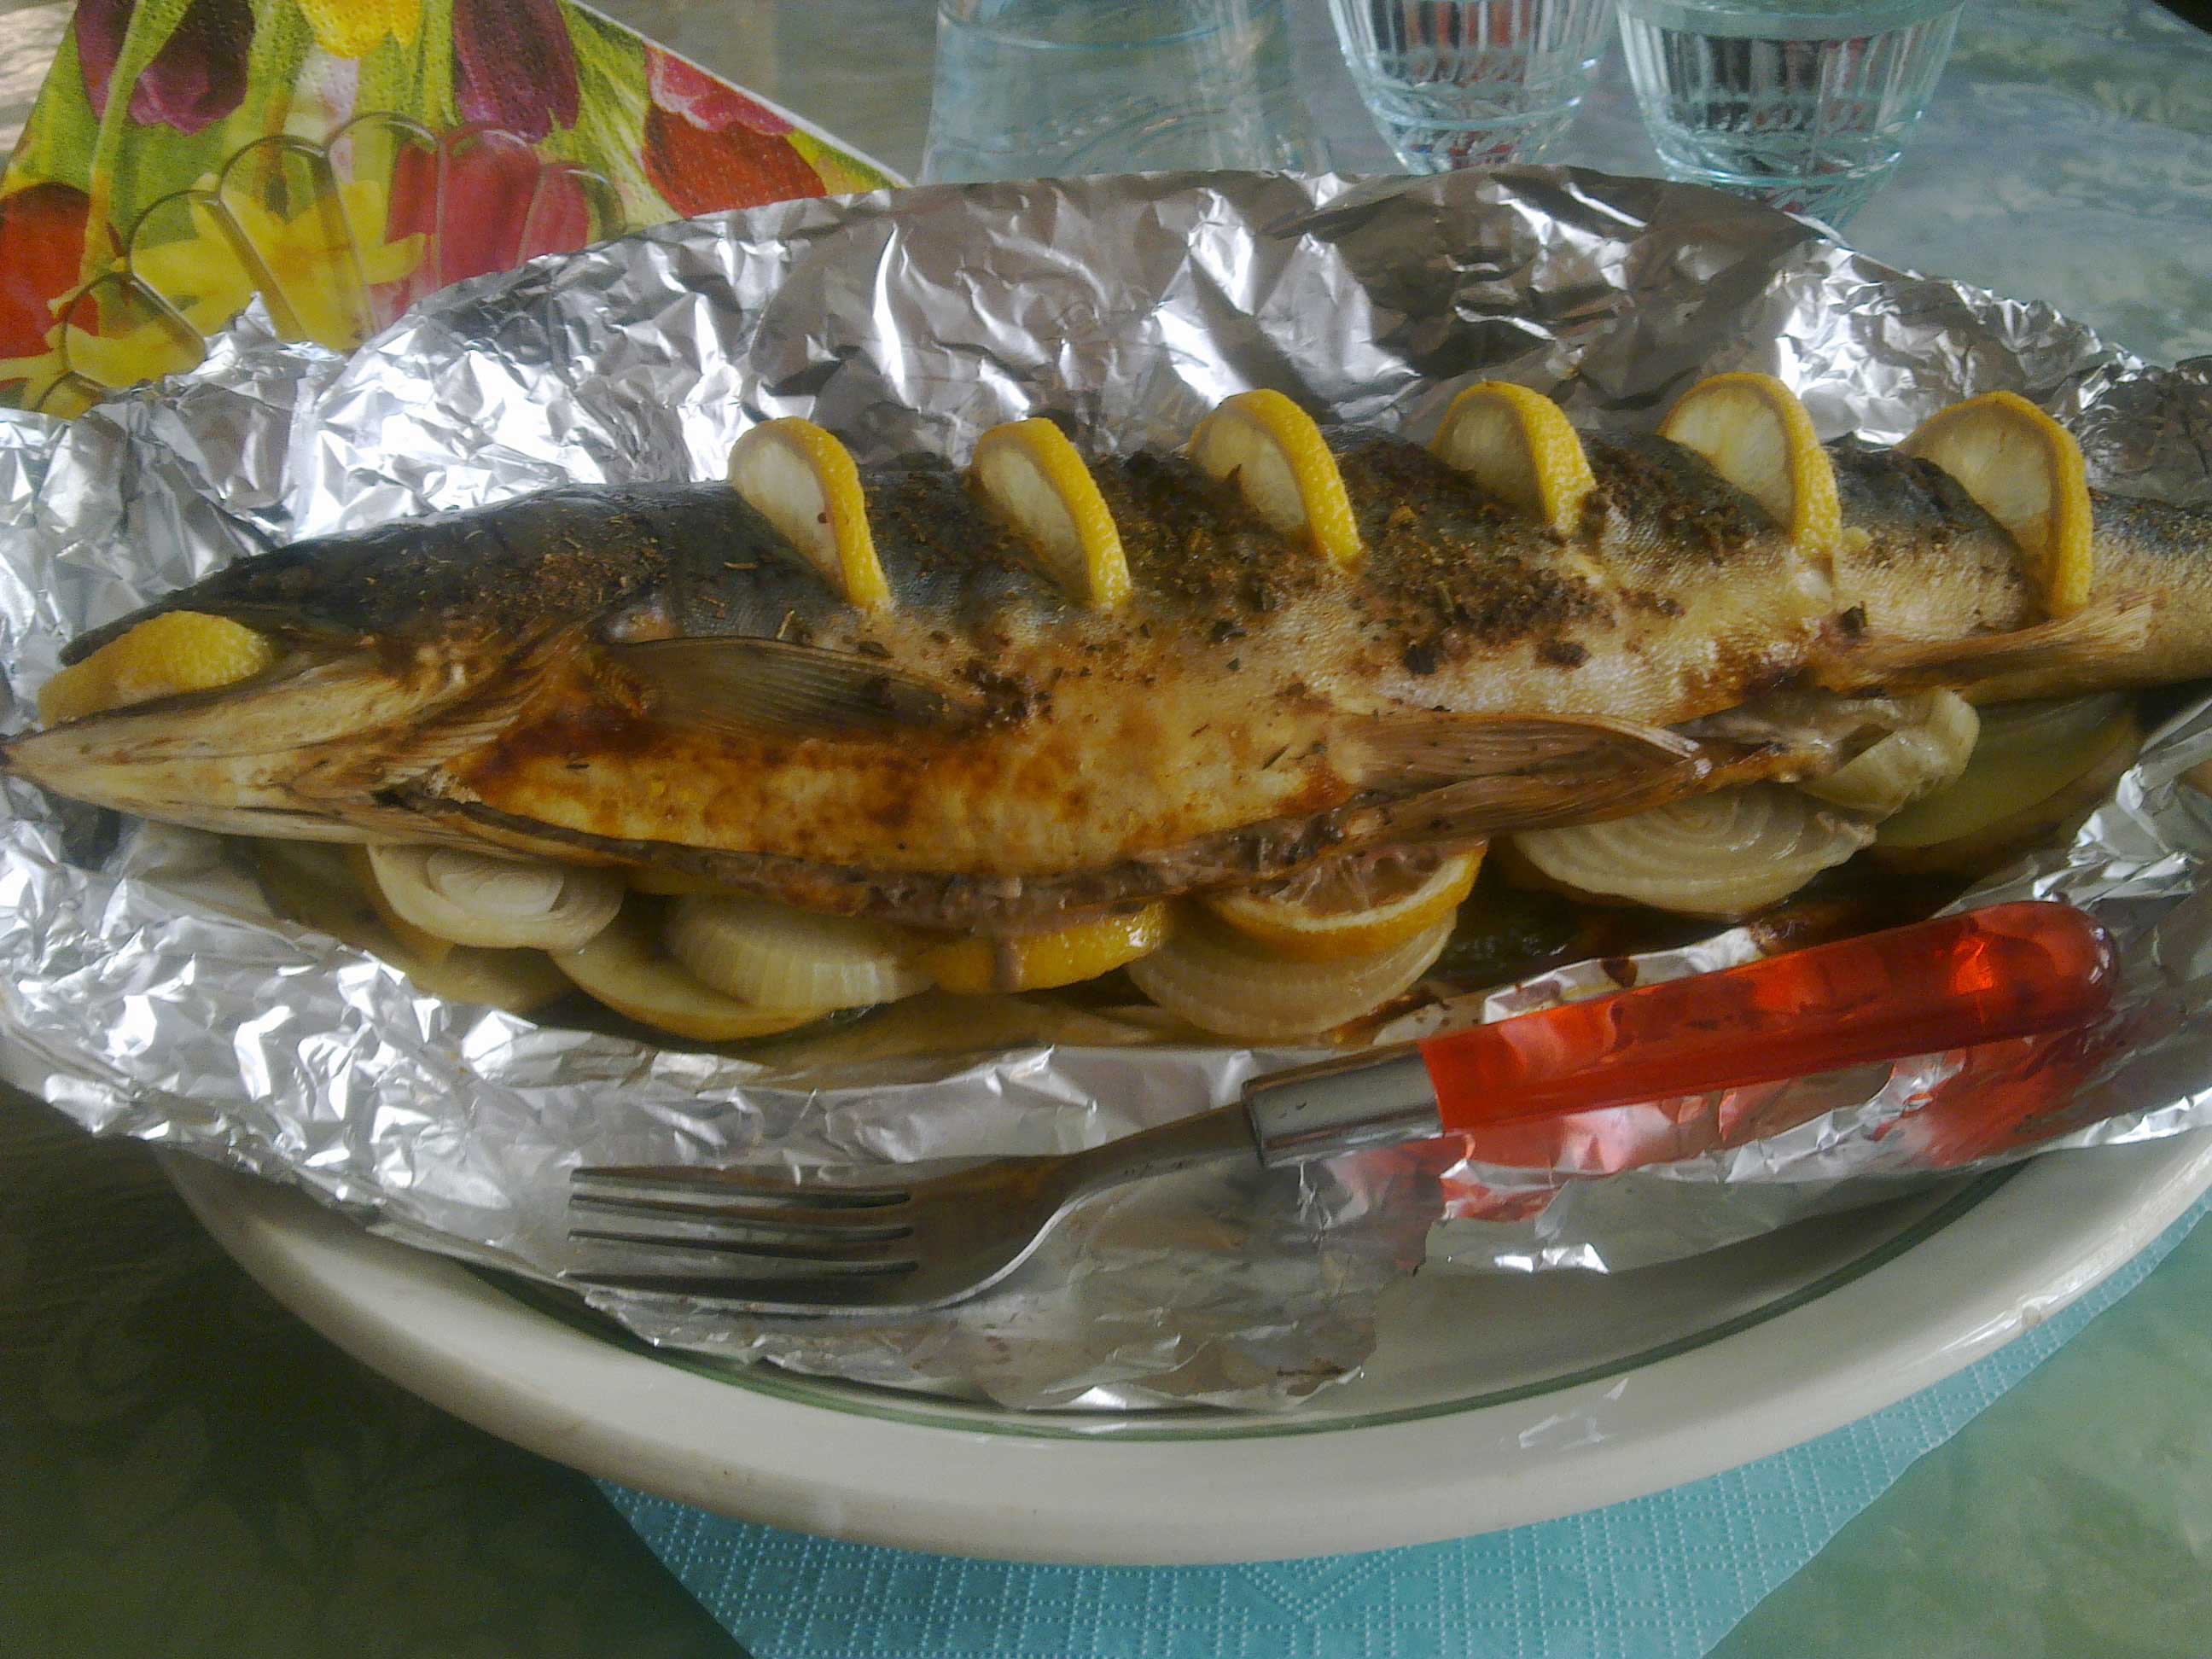 Рыба голец, рецепты приготовления, основные рекомендации